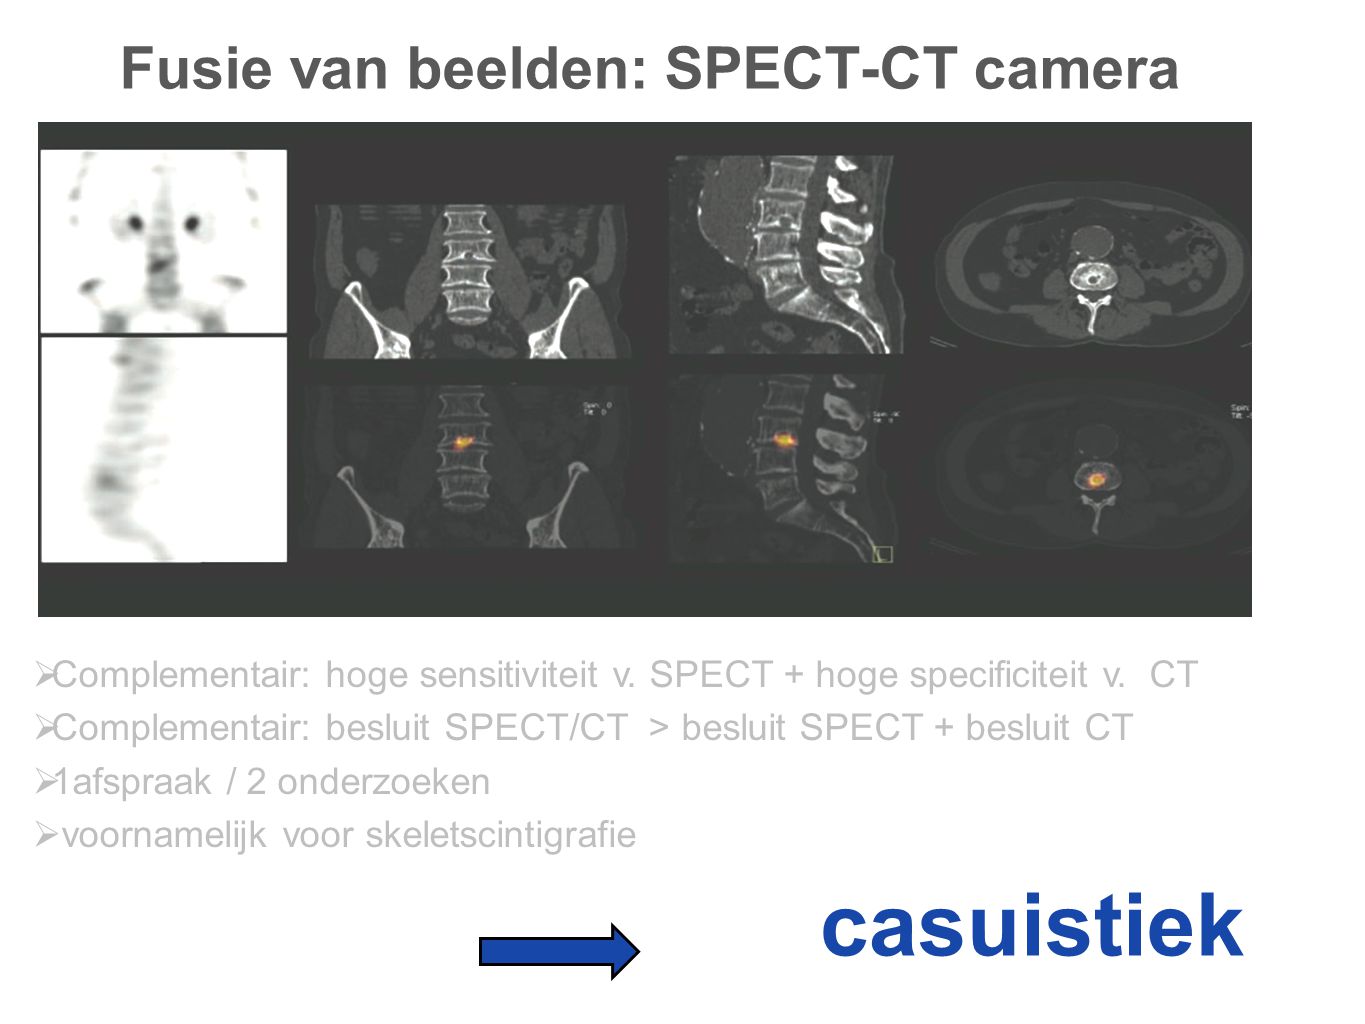 Fusie van beelden: SPECT-CT camera